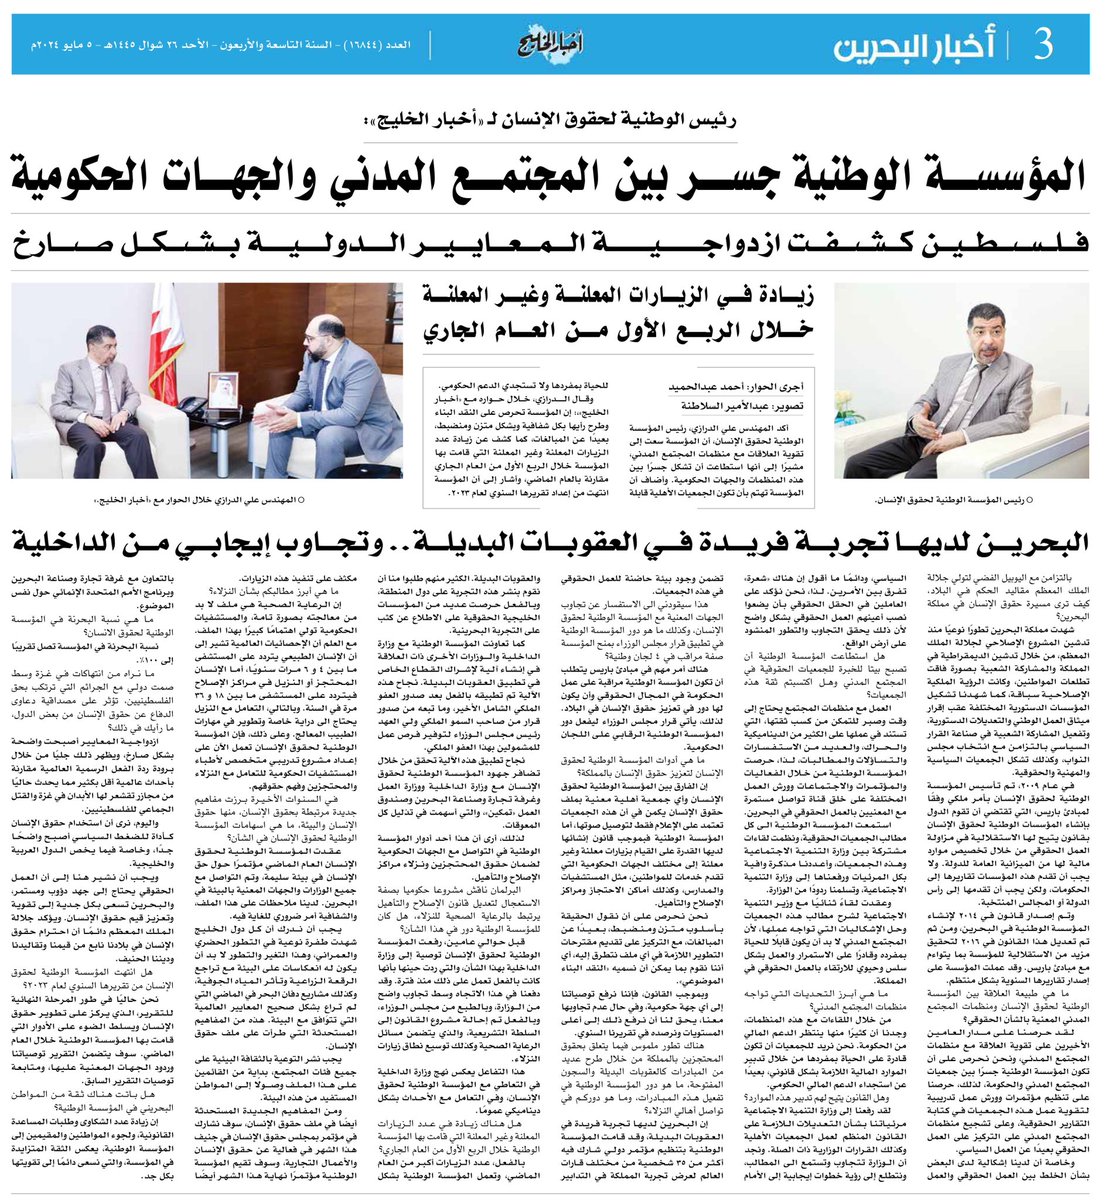 المهندس علي أحمد الدرازي رئيس المؤسسة الوطنية لحقوق الإنسان في حوار صحفي مع صحيفة أخبار الخليج.